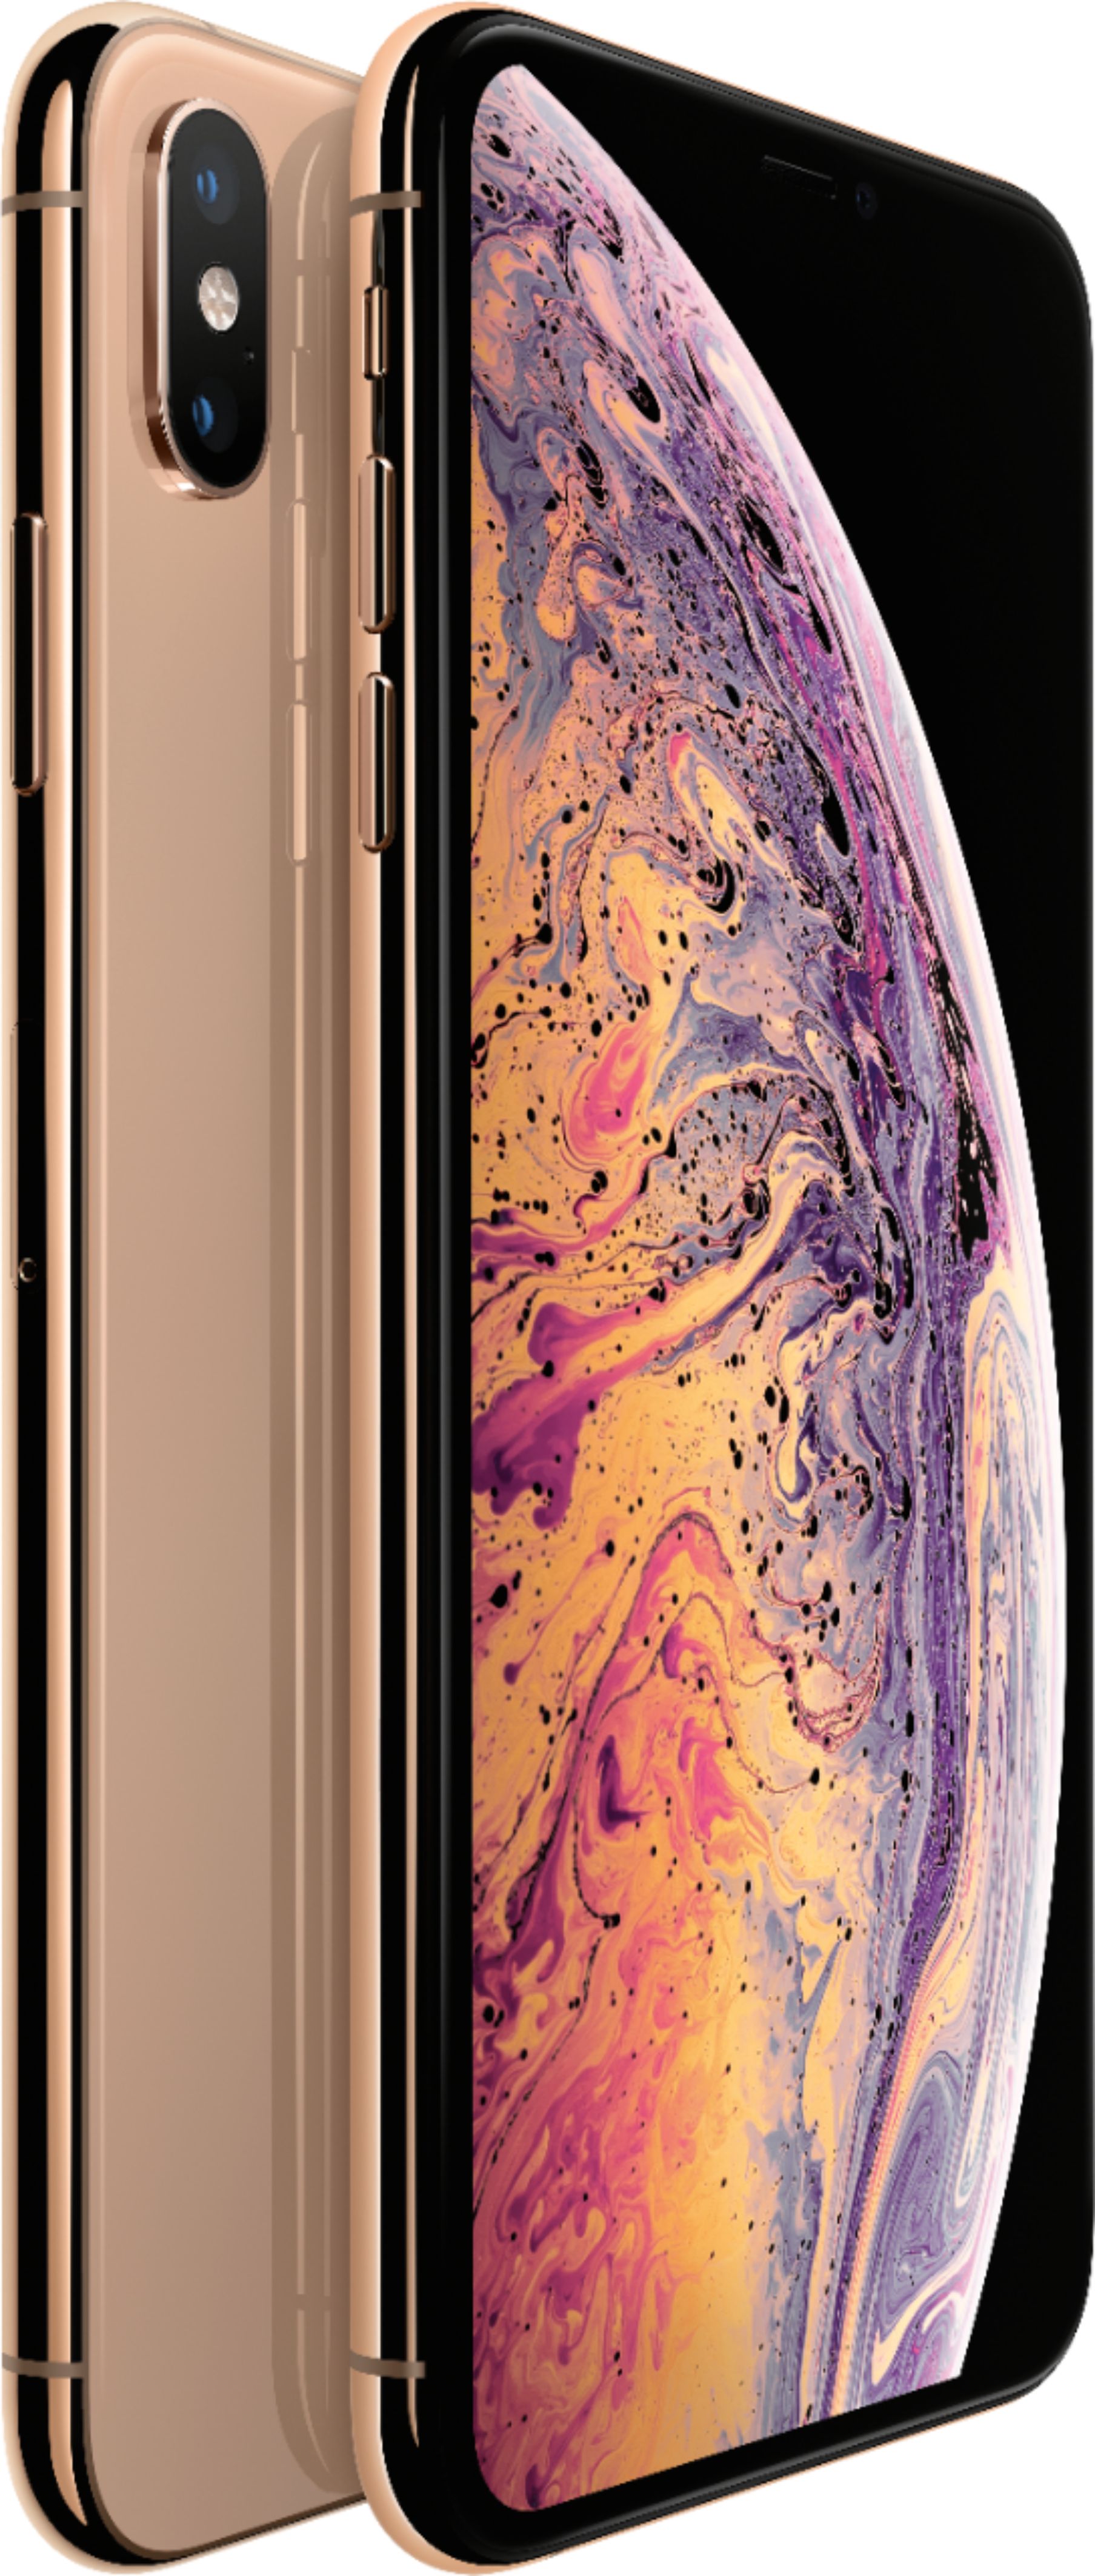 スマートフォン/携帯電話 スマートフォン本体 Best Buy: Apple iPhone XS Max 64GB Gold (AT&T) MT5C2LL/A